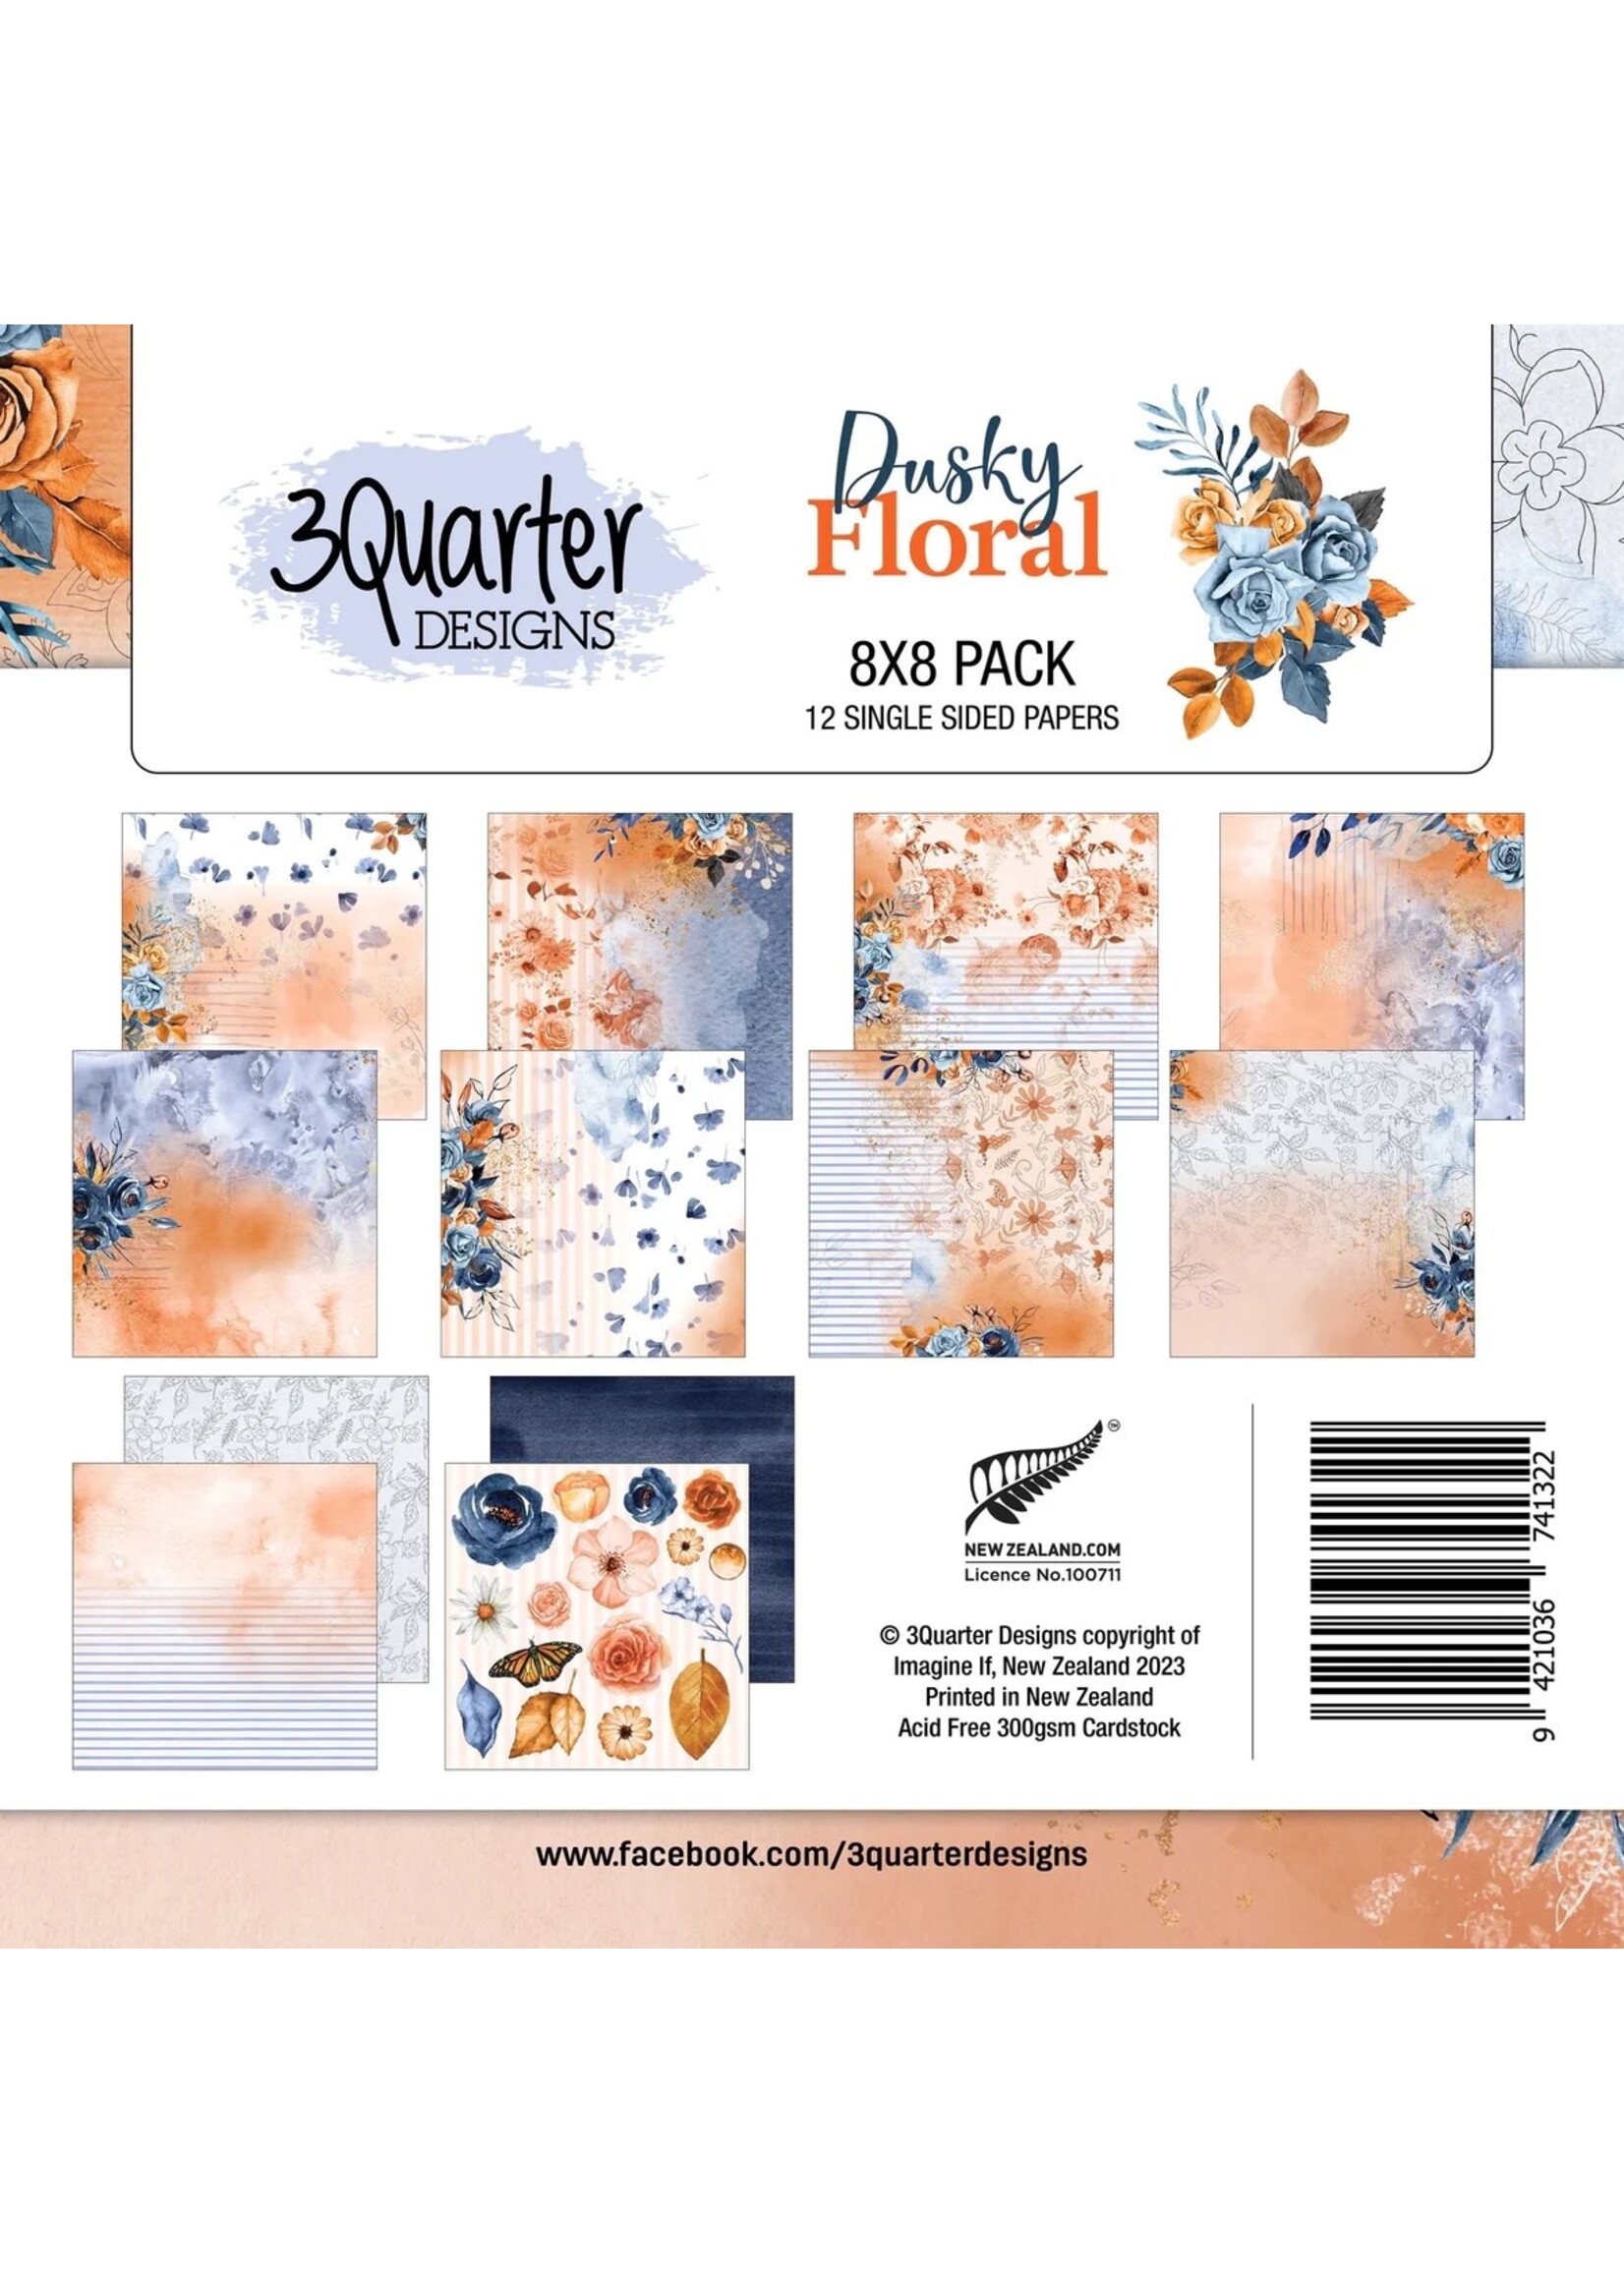 3Quarter Designs Dusky Floral 8x8 Paper Pad